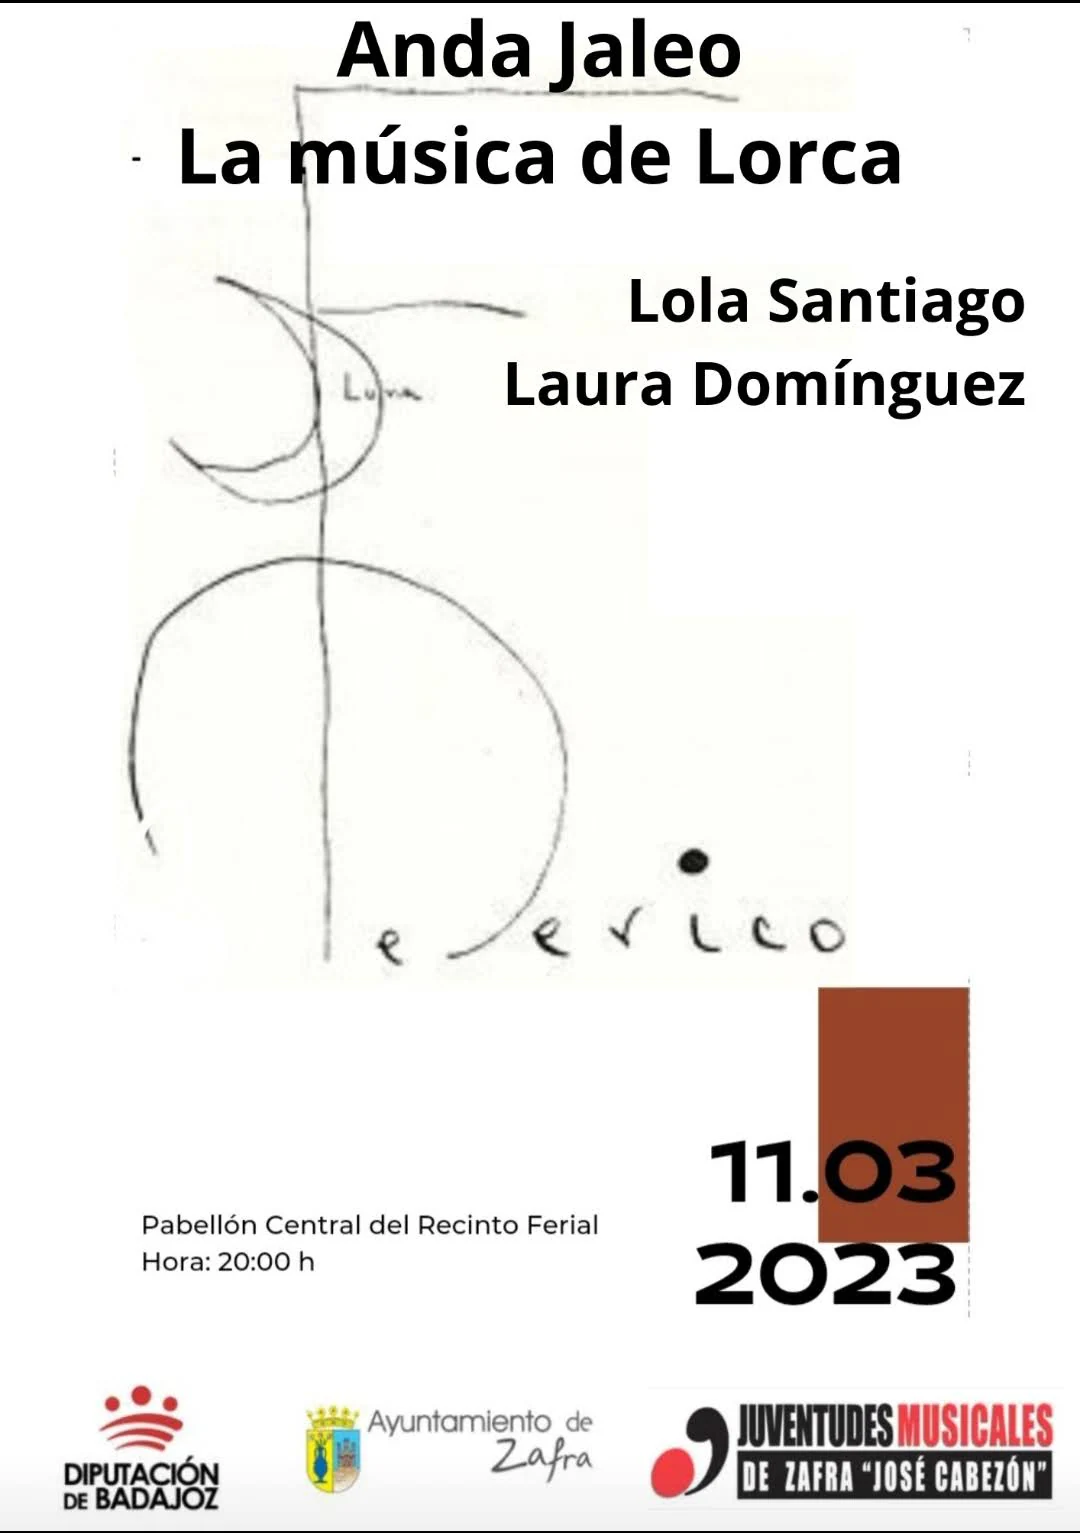 Juventudes Musicales conmemora el Día de la Mujer con Lola Santiago y Laura Domínguez y la música de Lorca